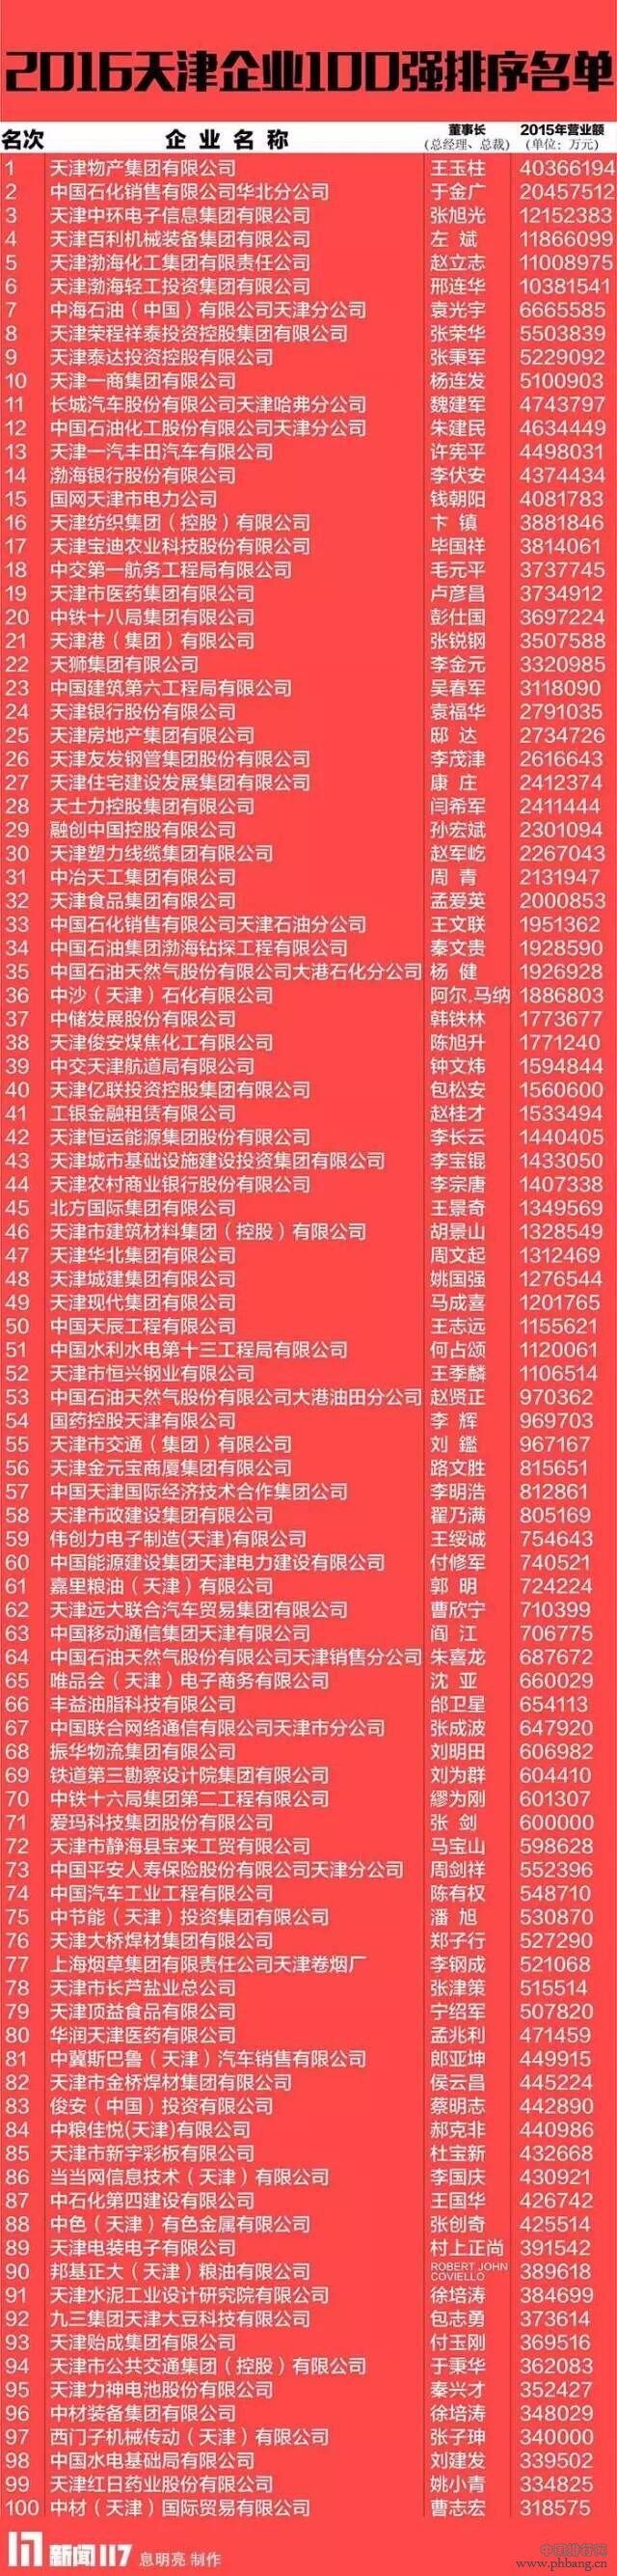 2016年天津企业100强排行榜